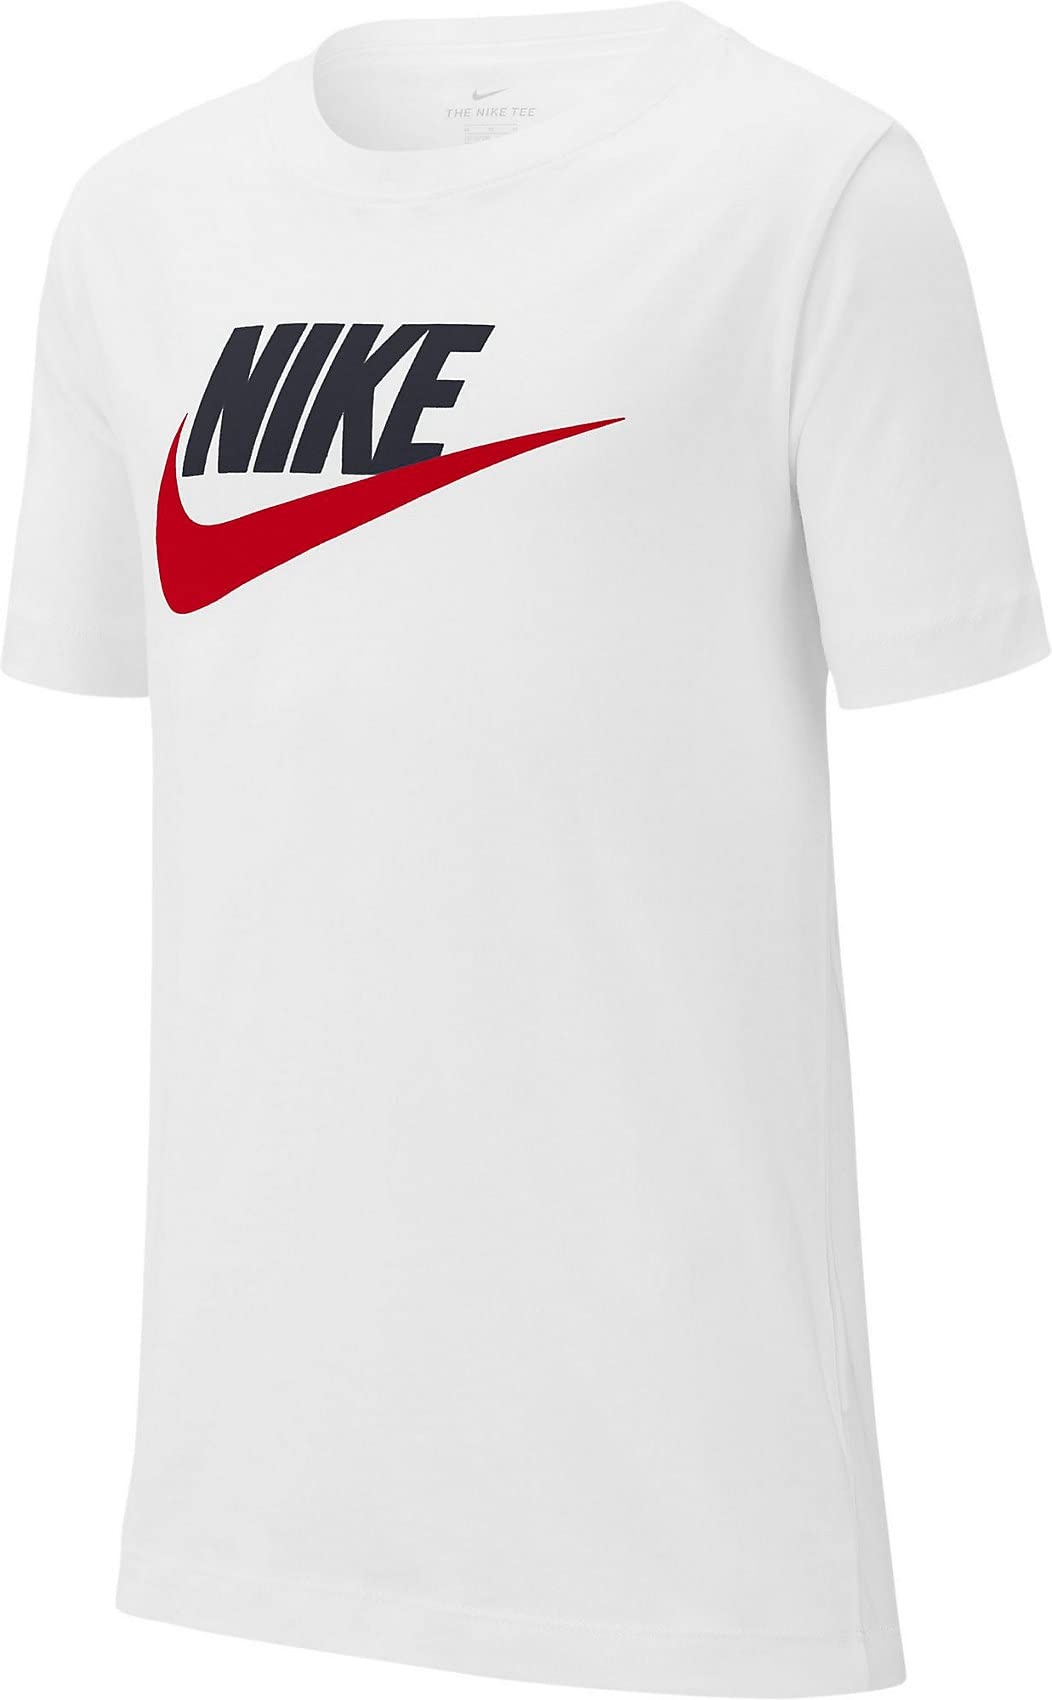 Nike Jungen B Nsw Tee Futura Icon Td T Shirt, White/Obsidian/University Red, 14 Jahre EU